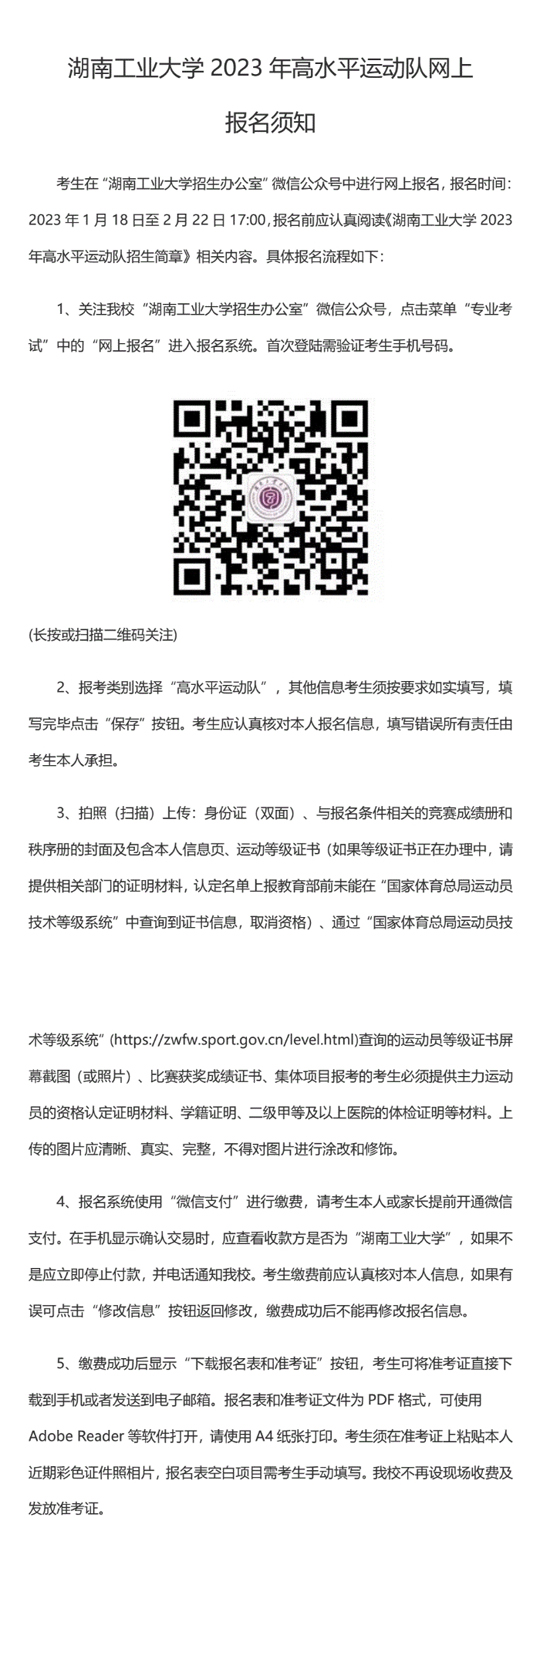 湖南工业大学2023年高水平运动队网上报名须知